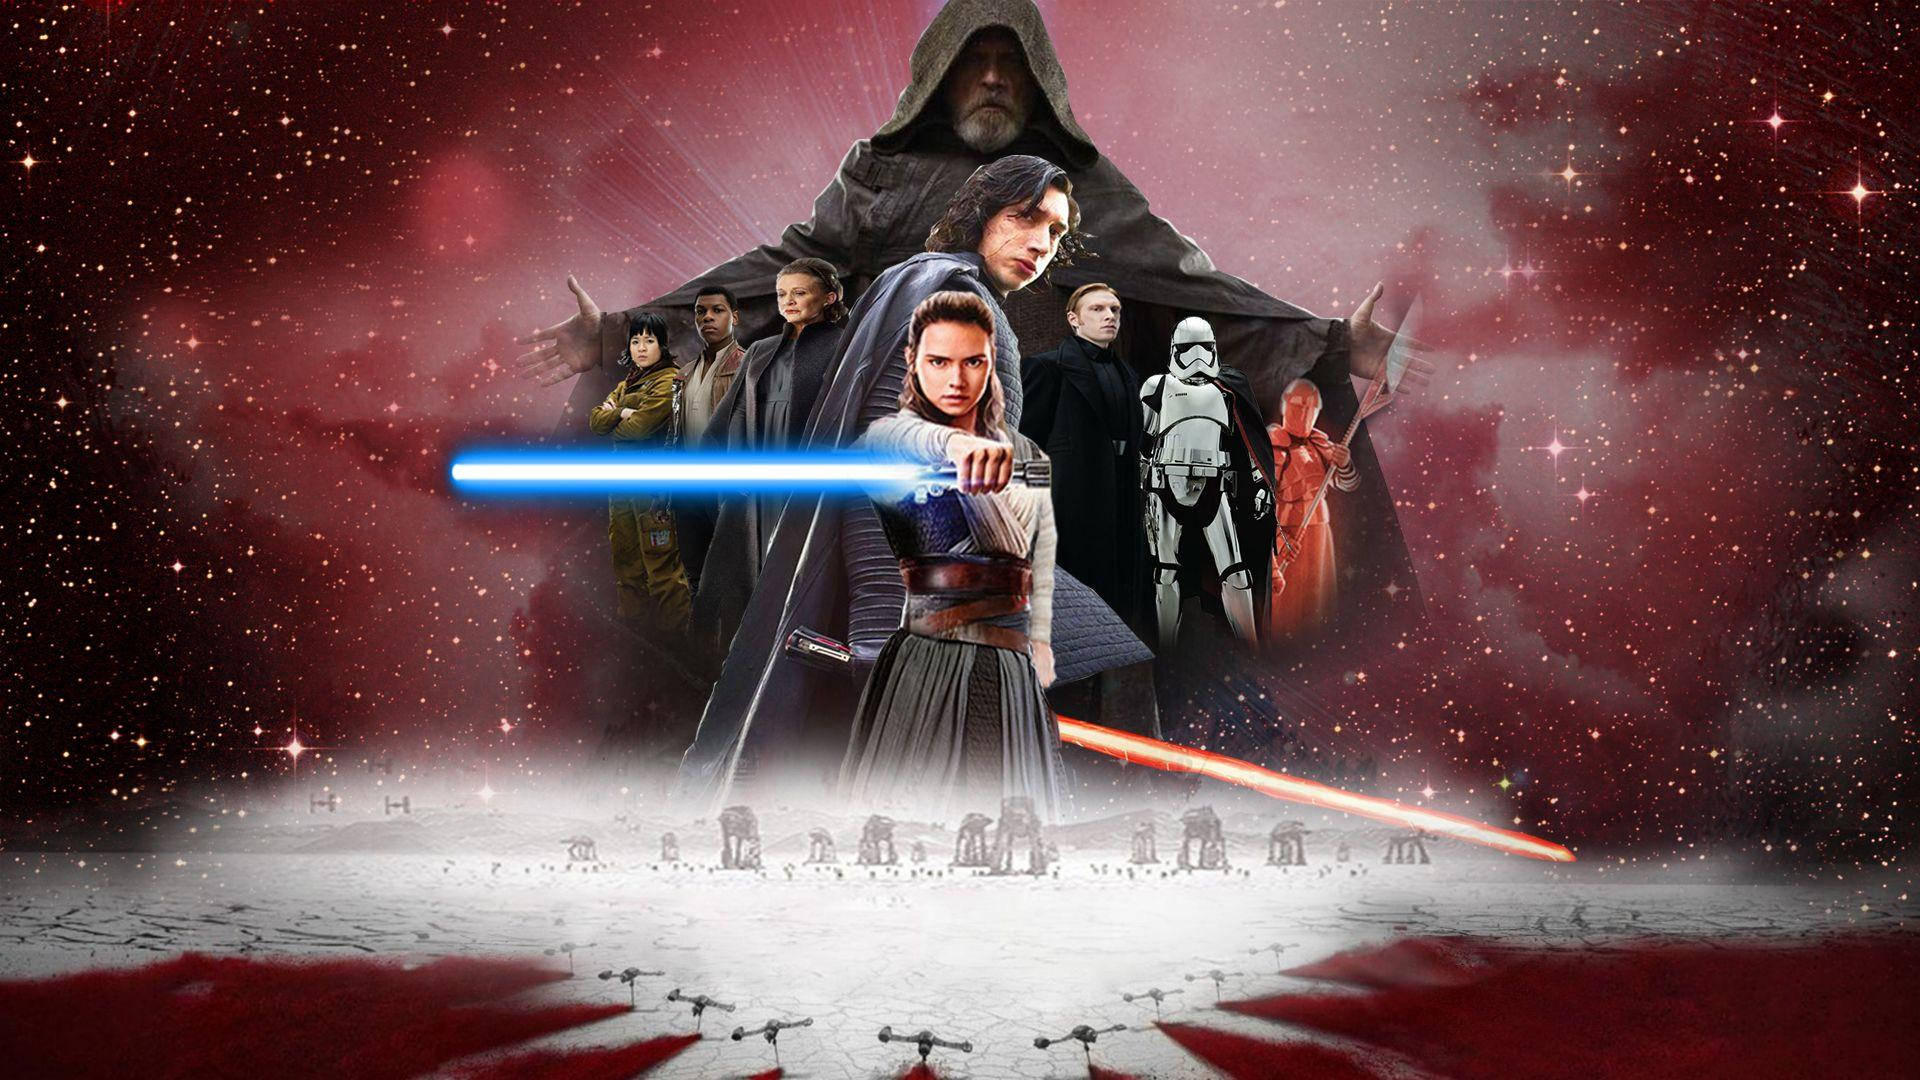 Reytrainiert Mit Der Macht In Star Wars: Die Letzten Jedi. Wallpaper